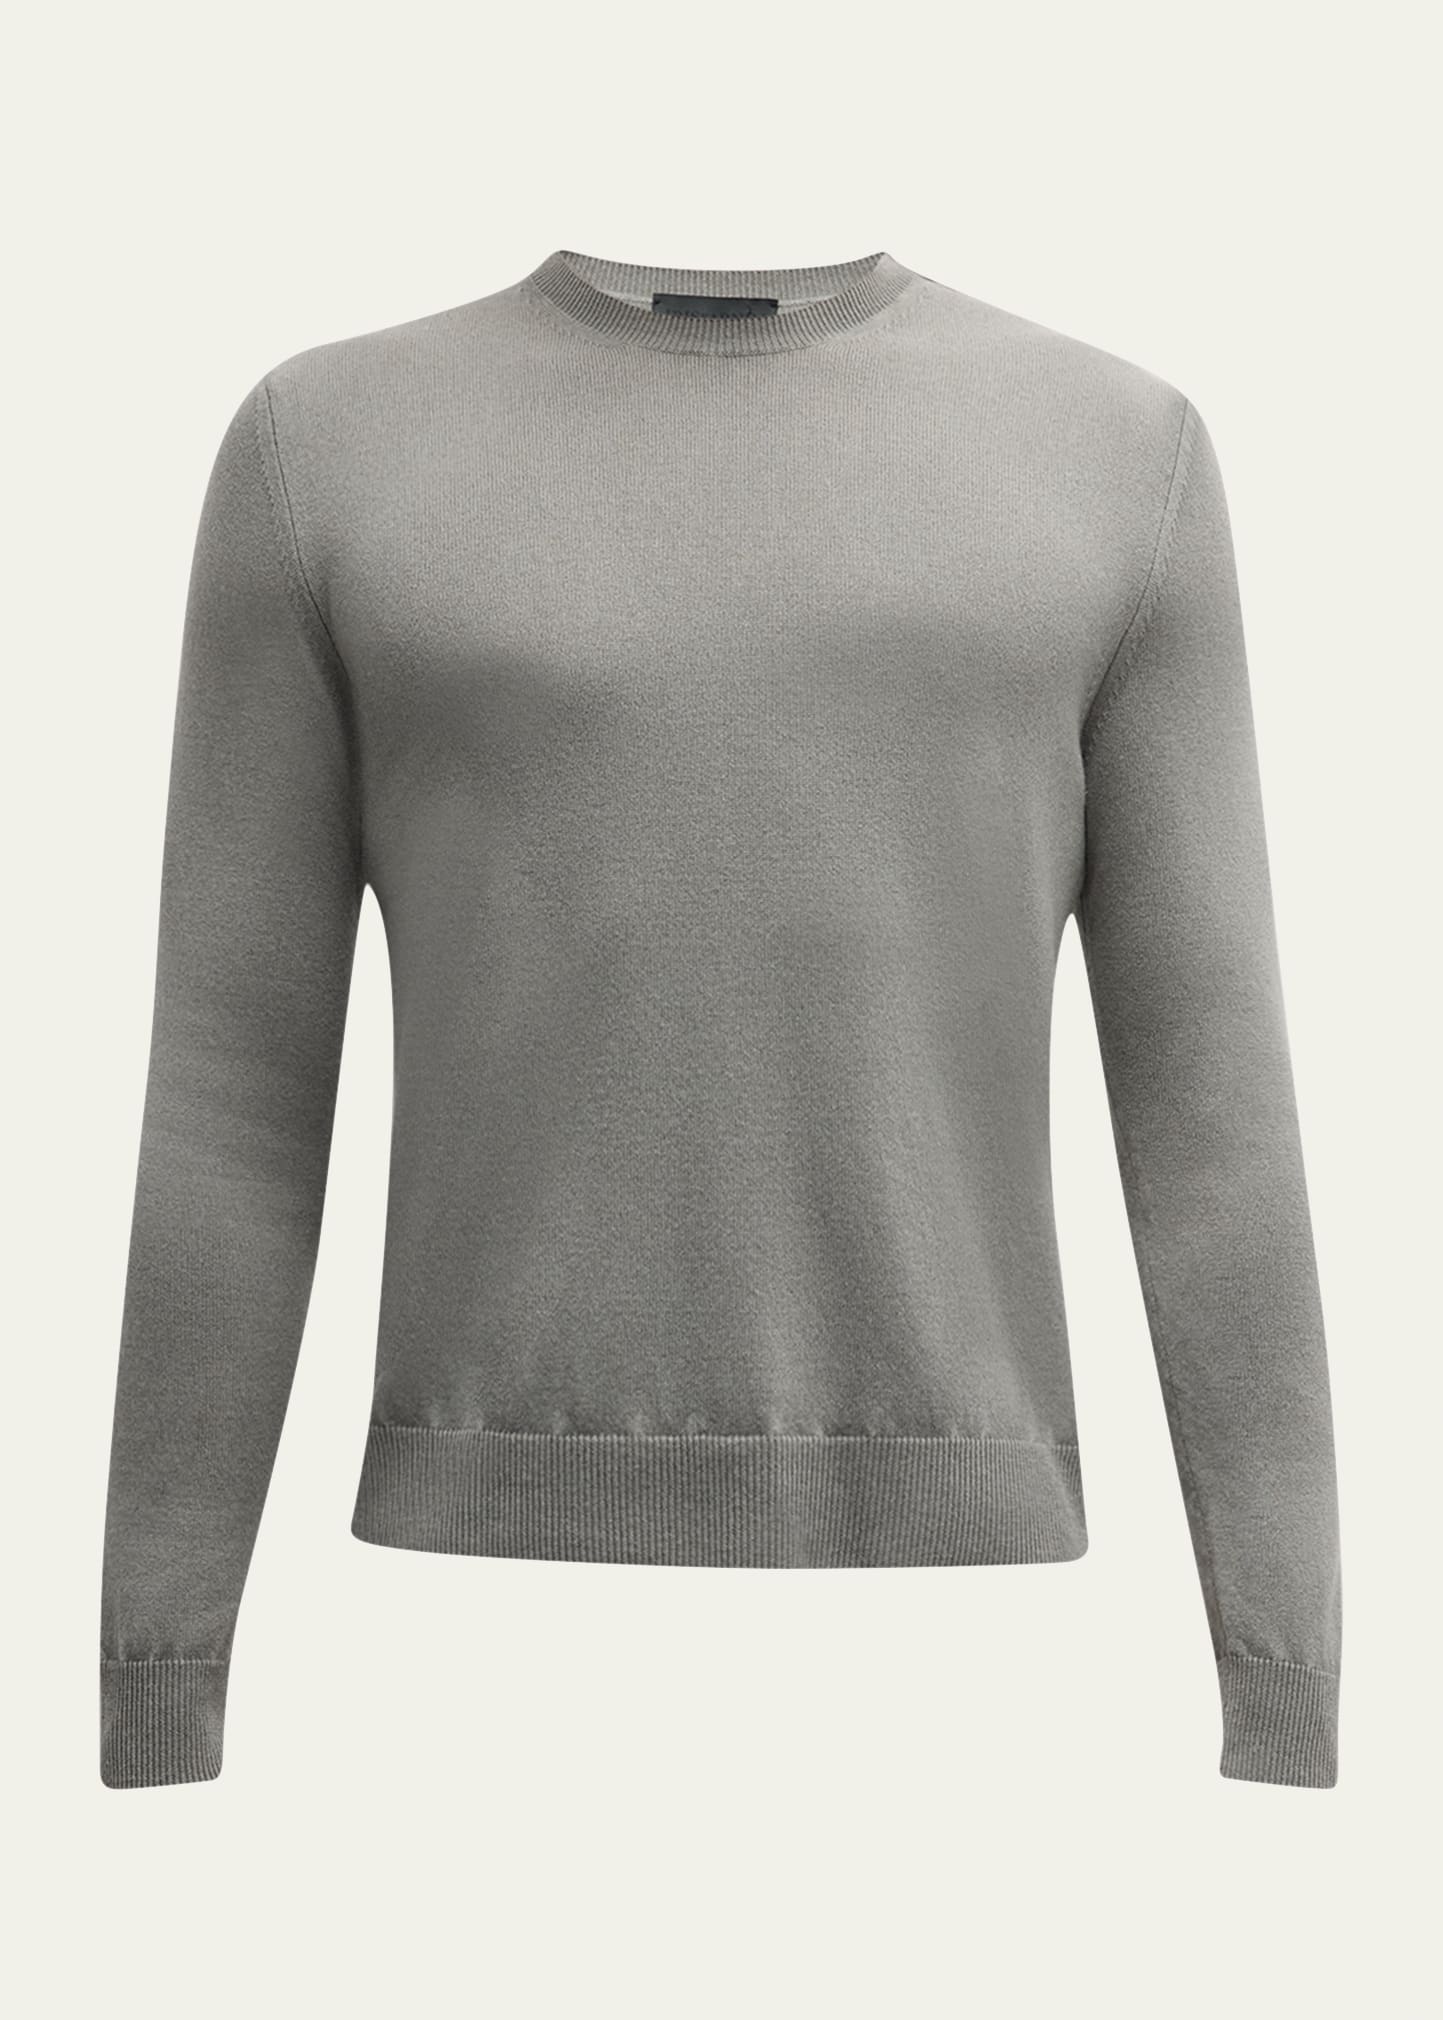 Iris Von Arnim Men's Stonewashed Cashmere Crewneck Sweater In Sage